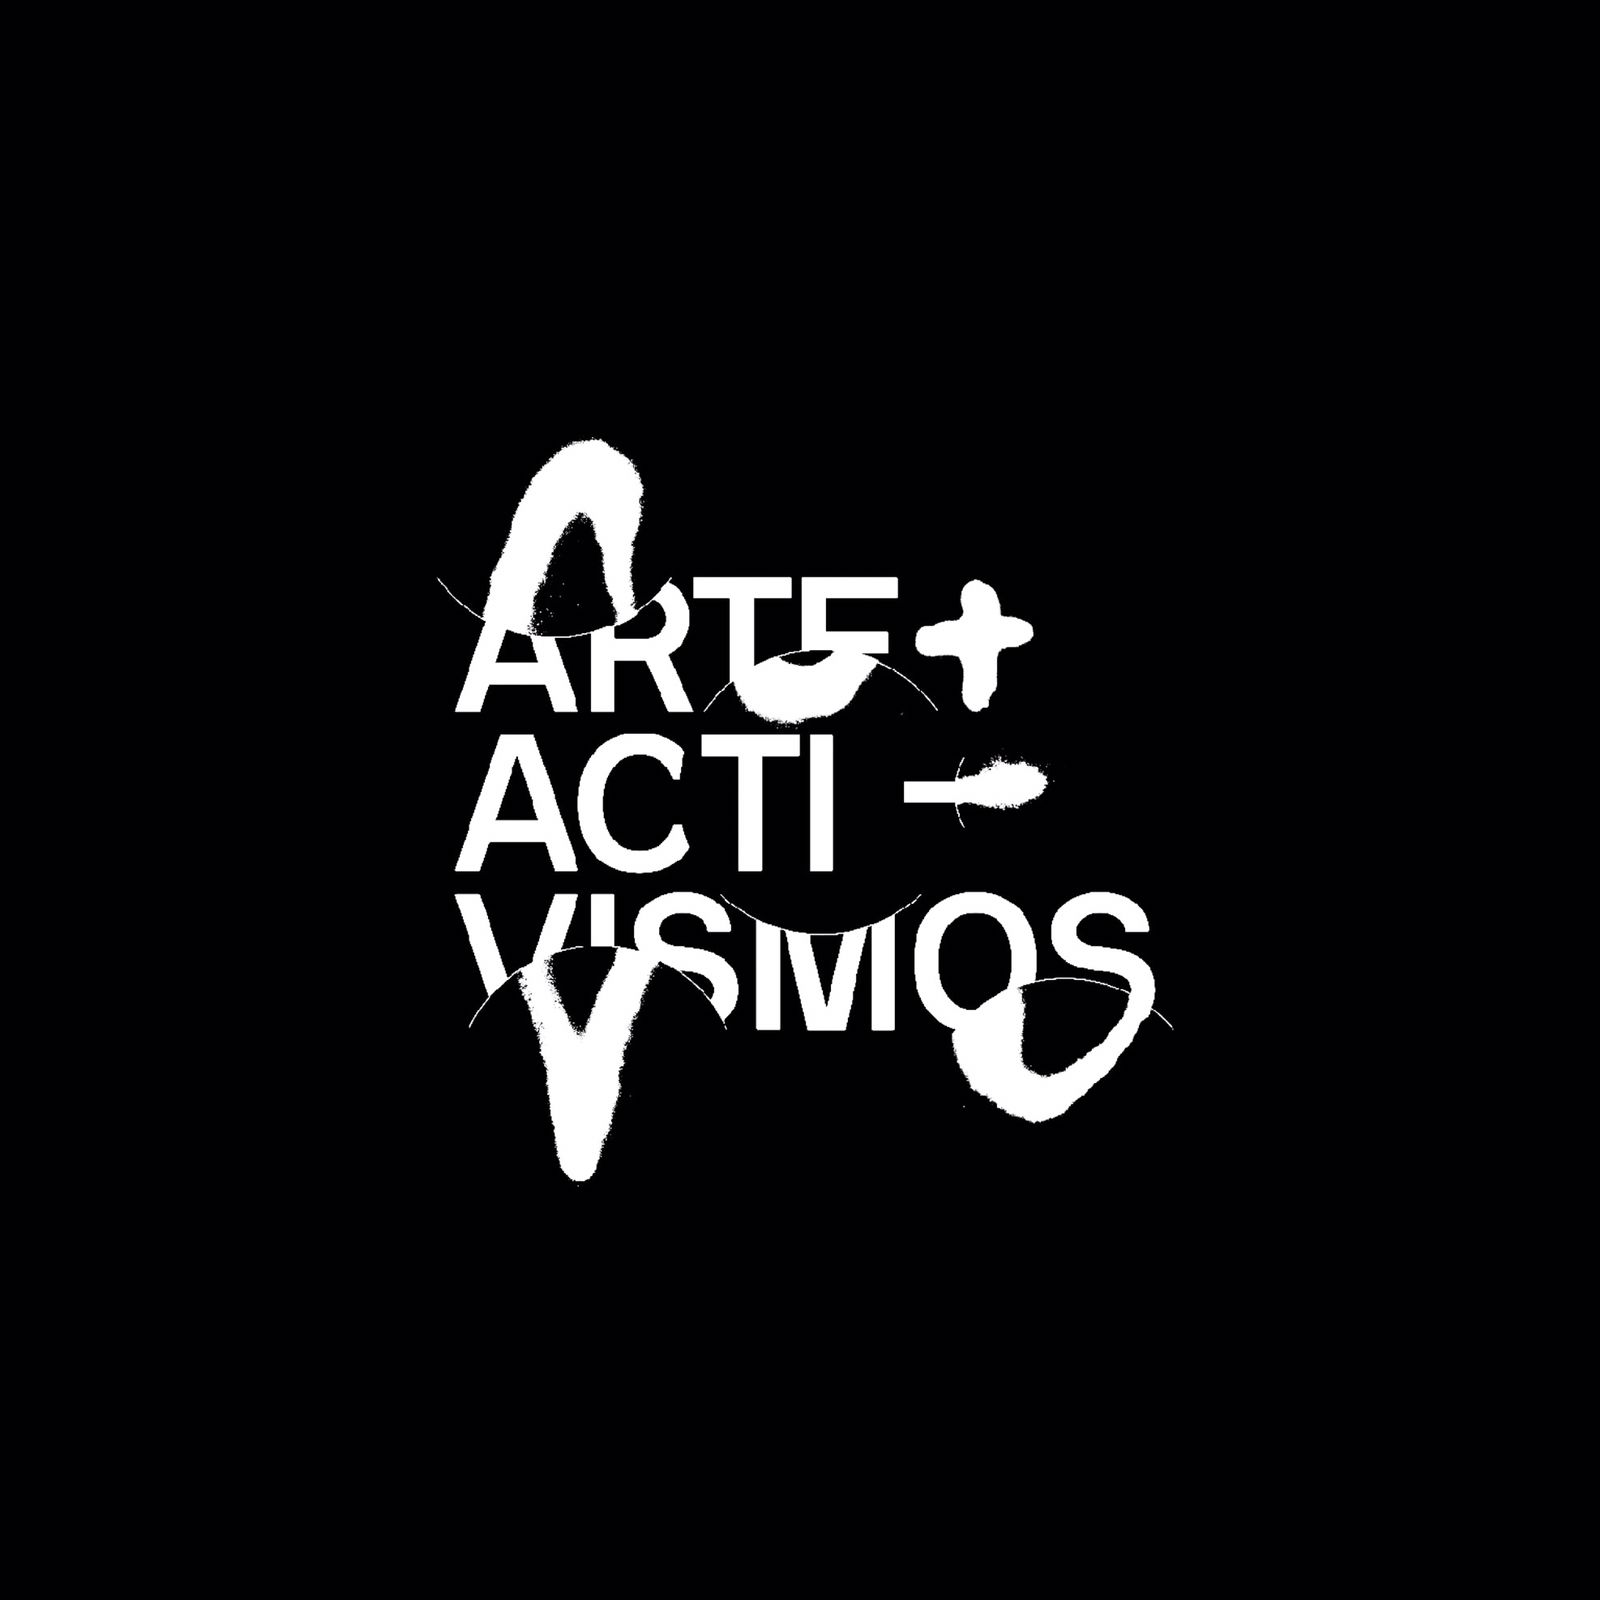 A+A is a platform that reunites artists and activists.